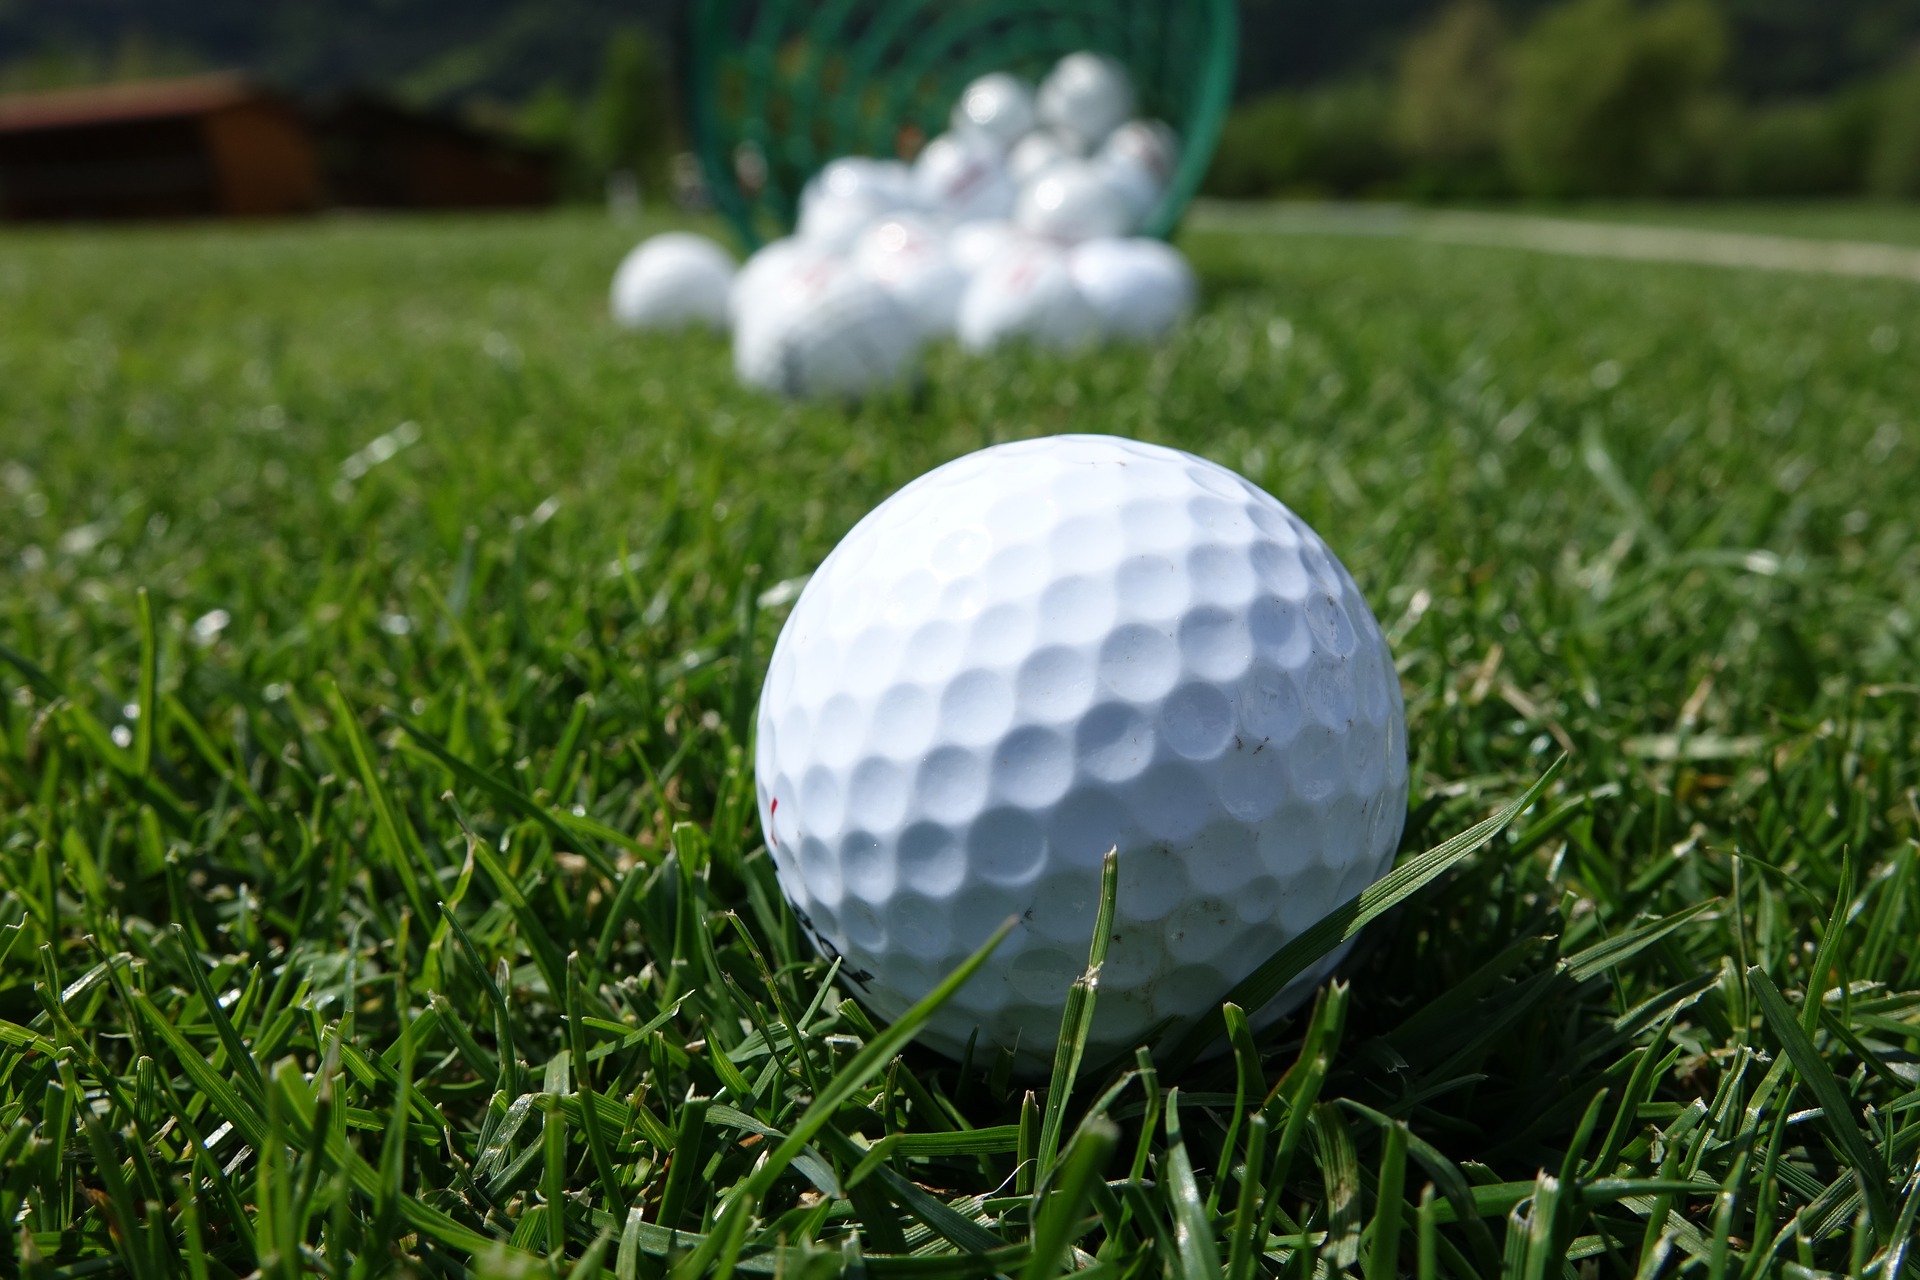 learn golf swing basics at Golf Dynamics golf school in Austin